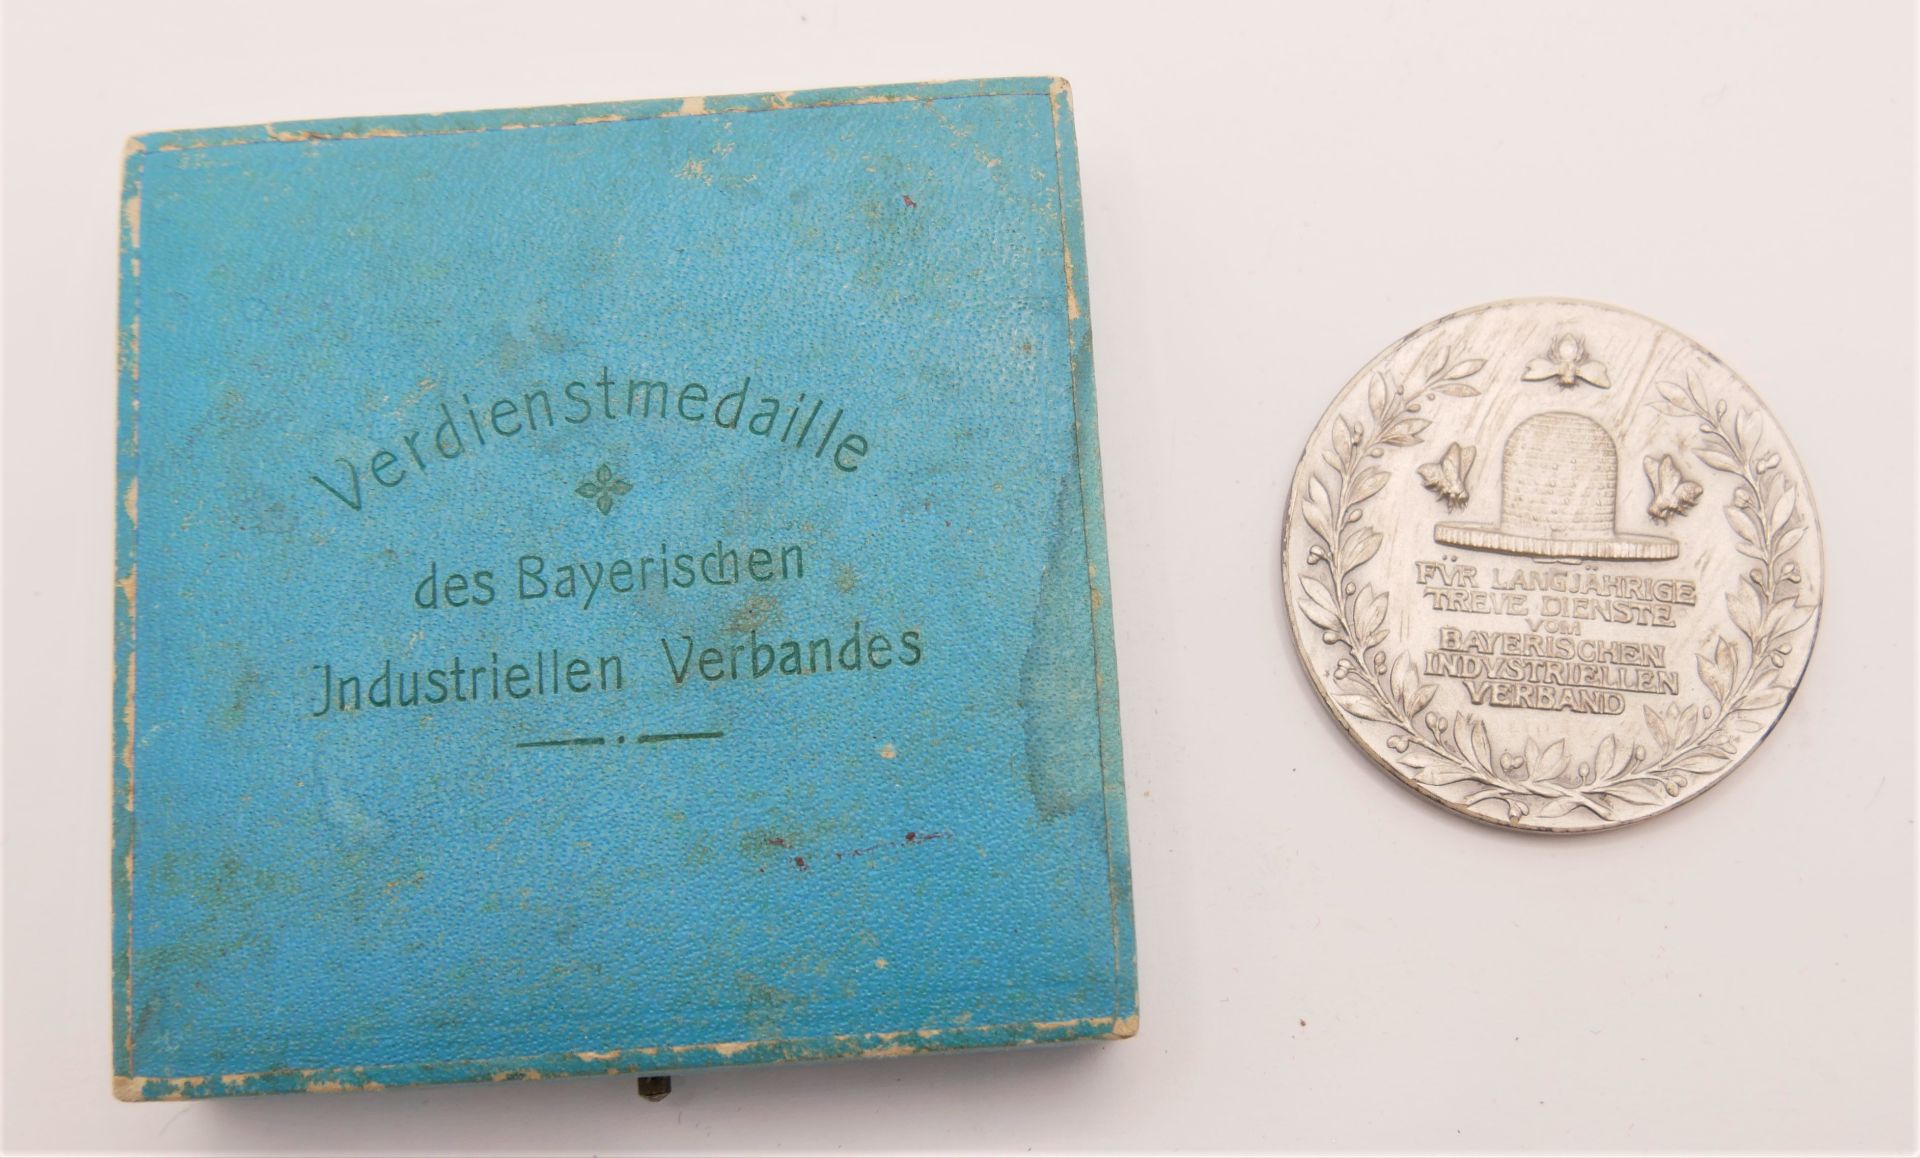 900 Verdienstmedaille Silber des Bayerischen Industriellen-Verbandes in Original Schatulle. - Bild 2 aus 3